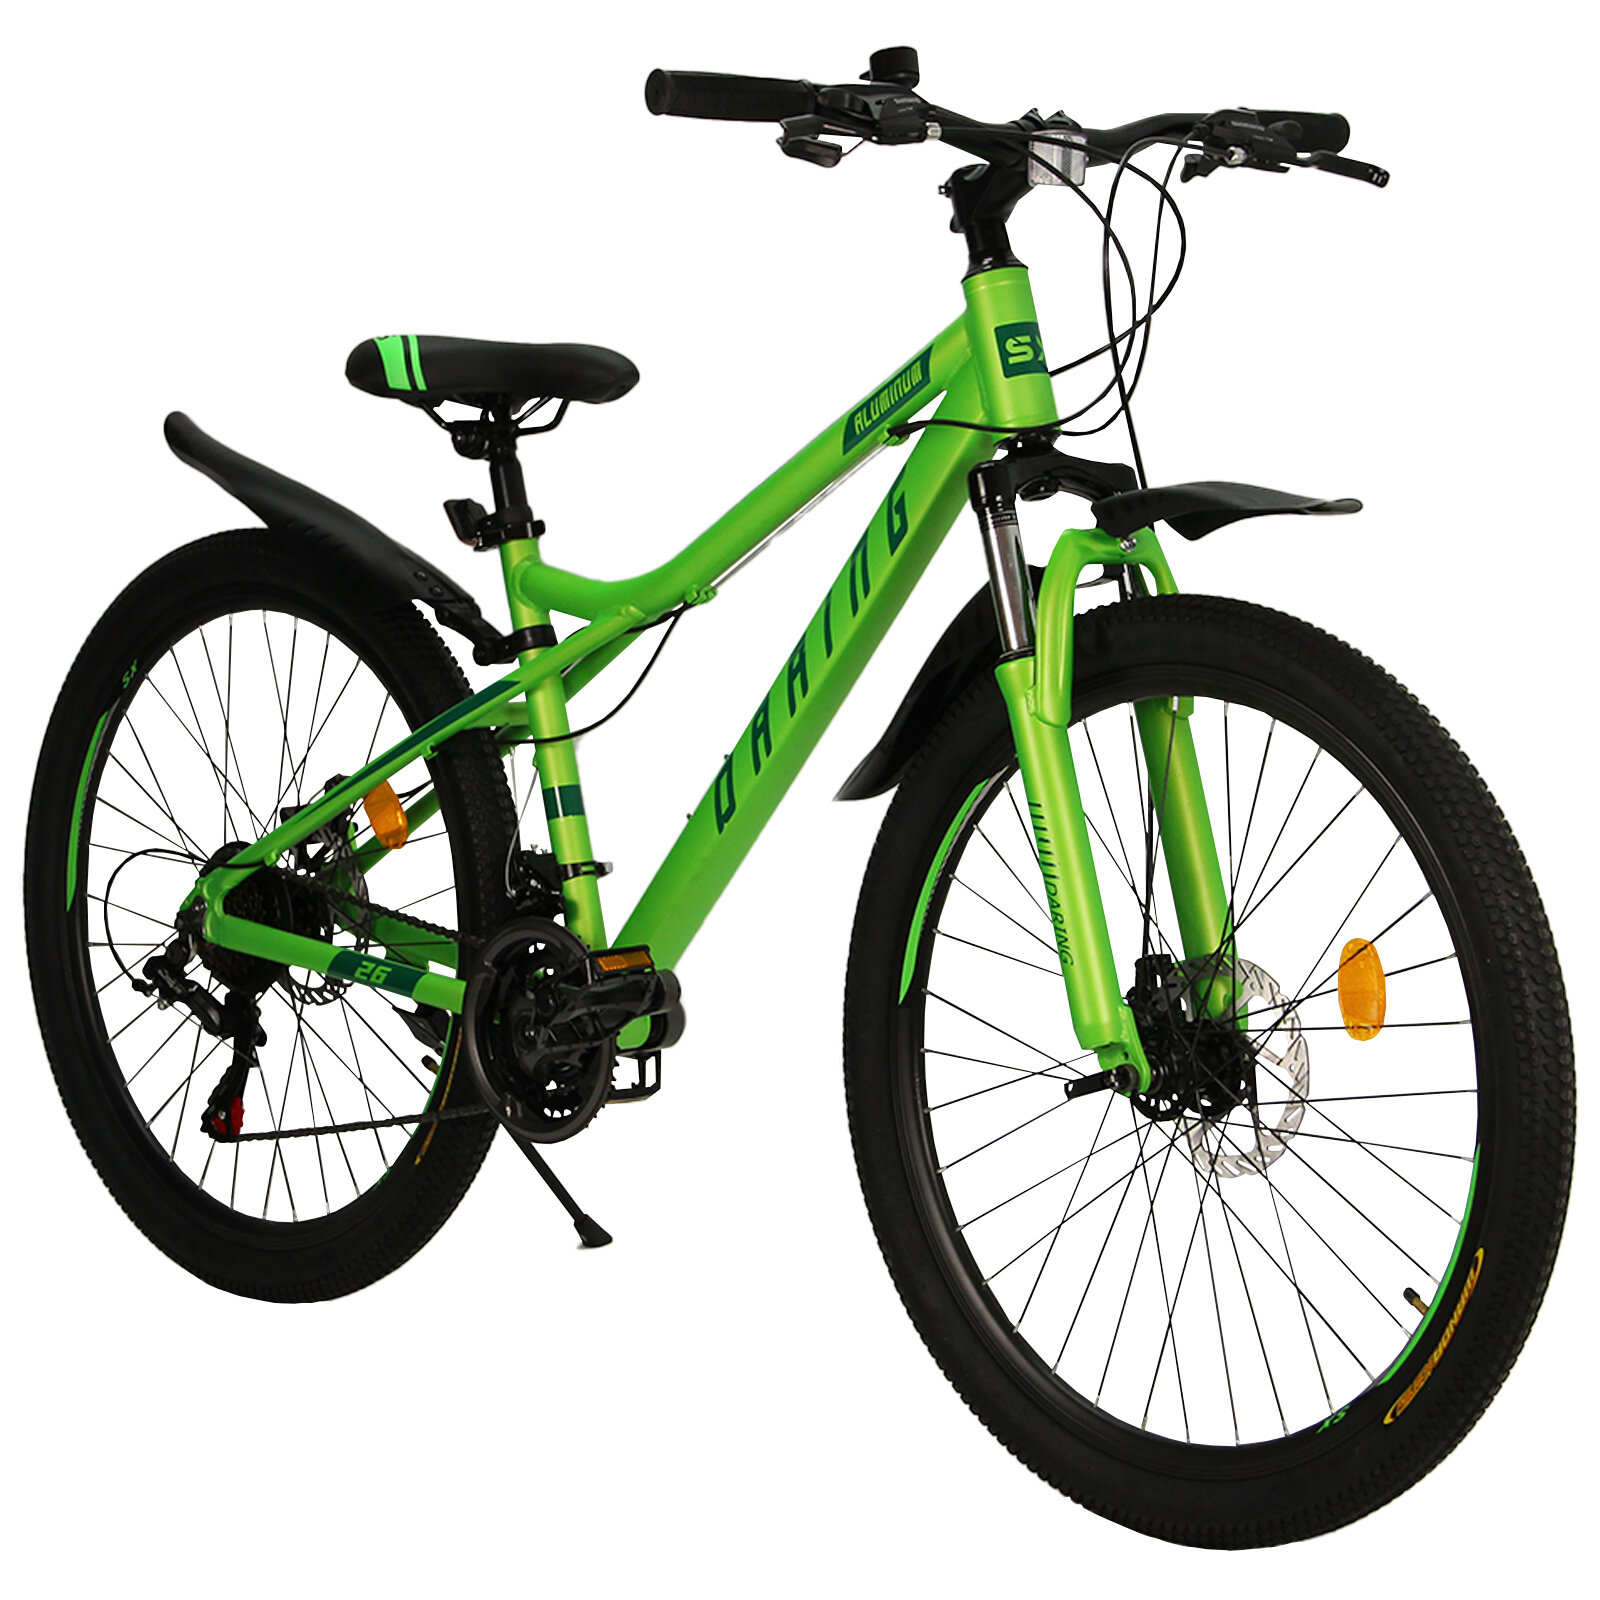 Велосипед скоростной 26 "Daring" зеленый, 21 скорость (Shimano), алюминиевая рама, тормоза дисковые механические